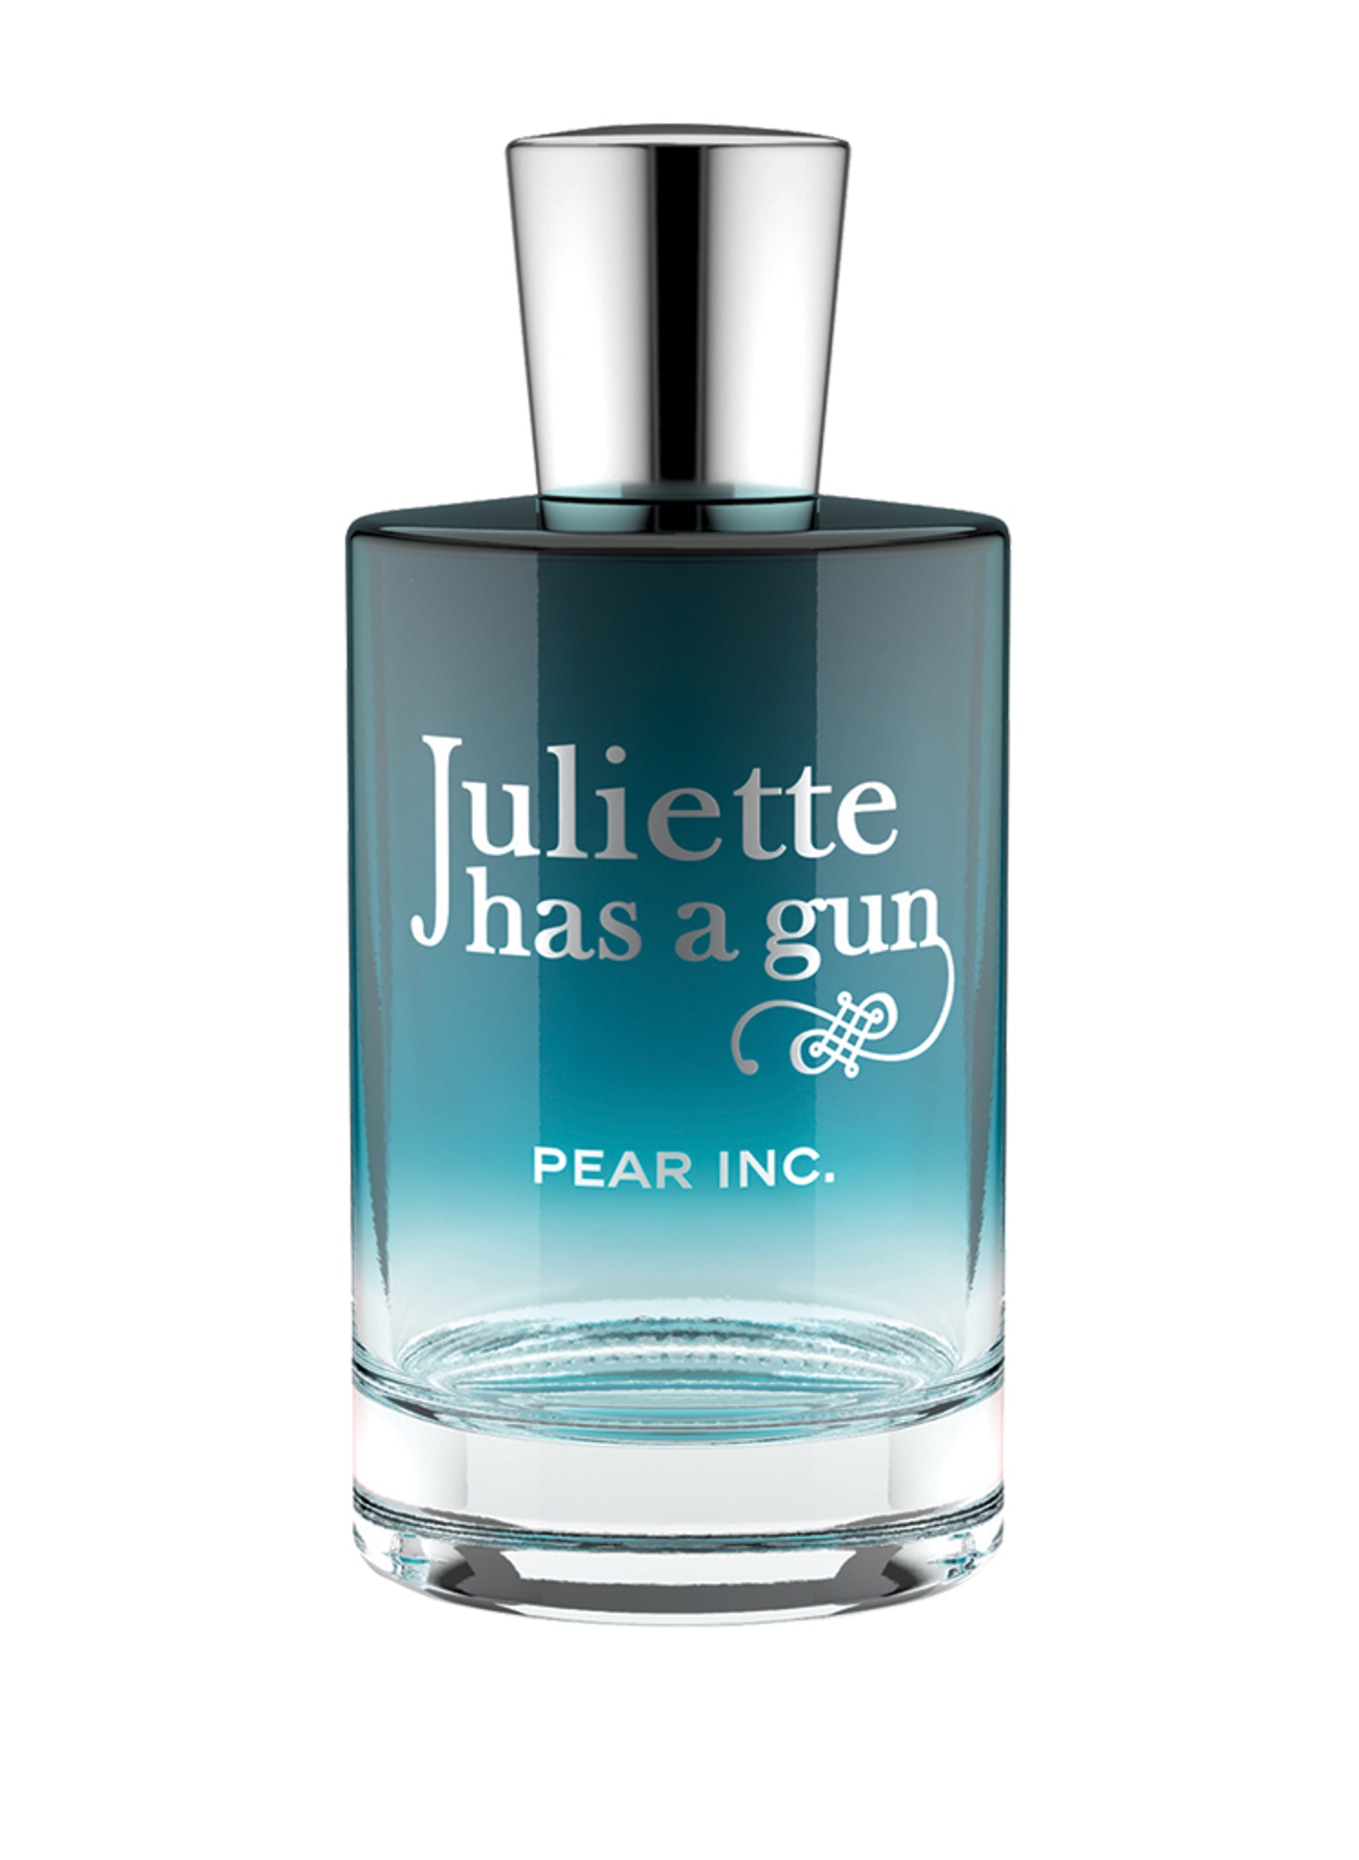 Juliette has a gun PEAR INC.(Bild null)